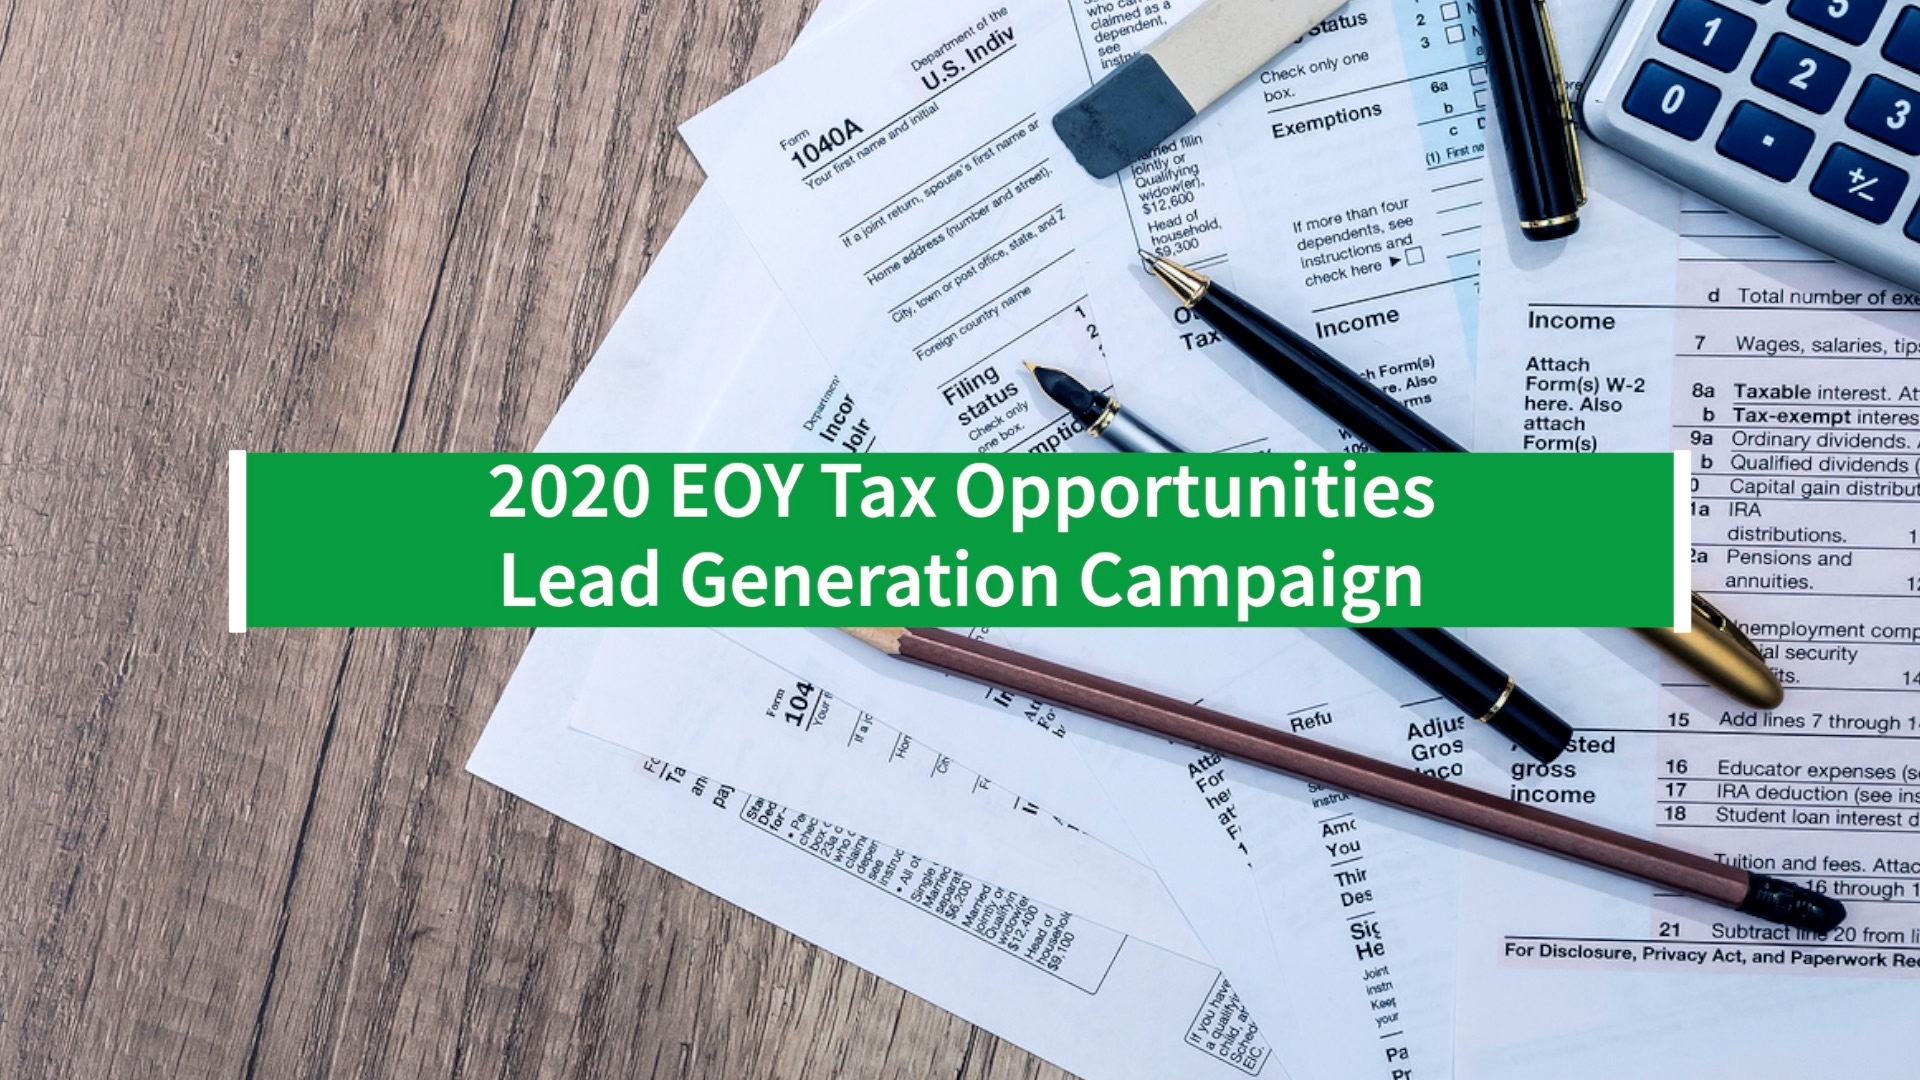 [NEW] Lead Gen Campaign | 2020 EOY Tax Opportunities